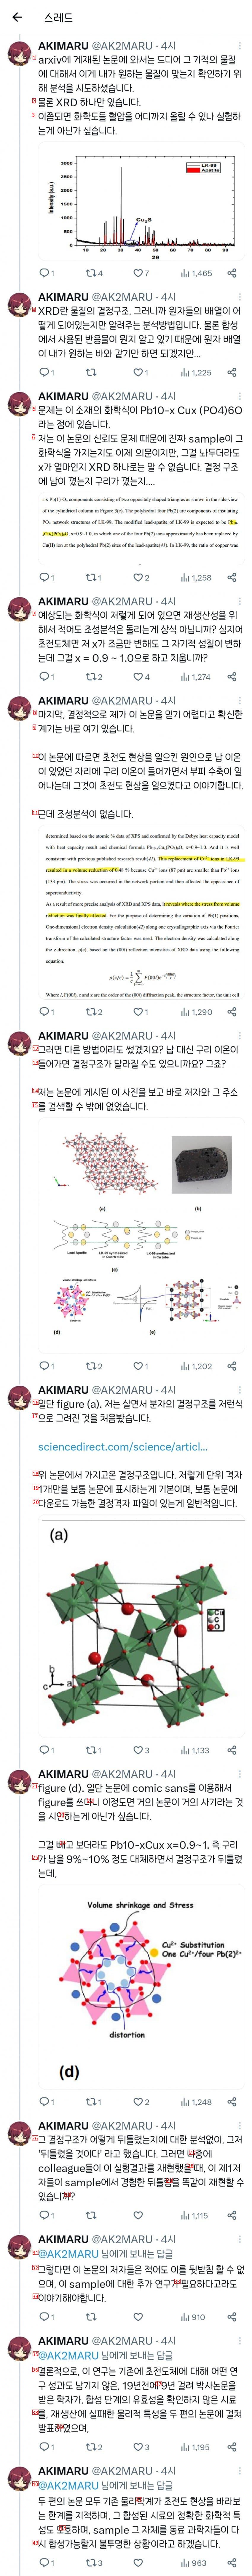 전공자가 한국 초전도체 논문 분석한 트윗